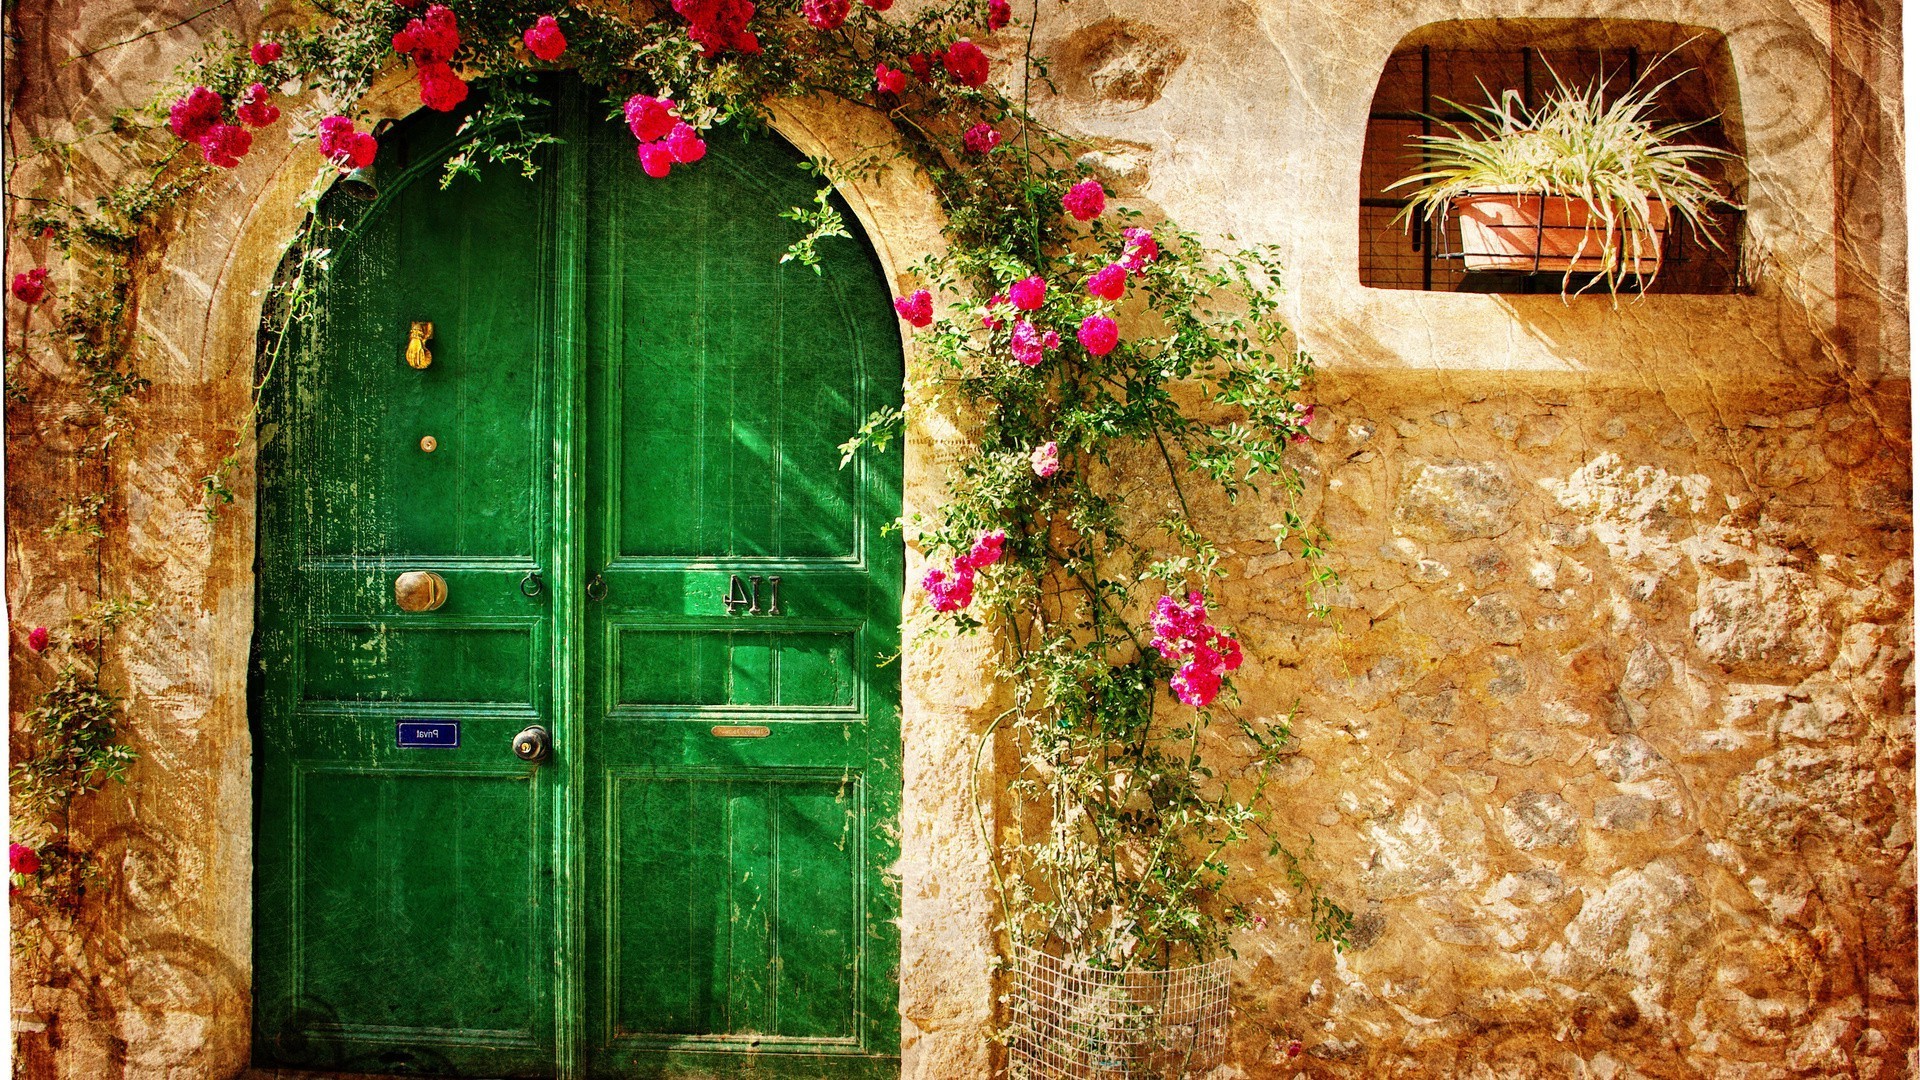 города и архитектура дверь дом древесины старый архитектура стены семья вход традиционные окна античная винтаж украшения